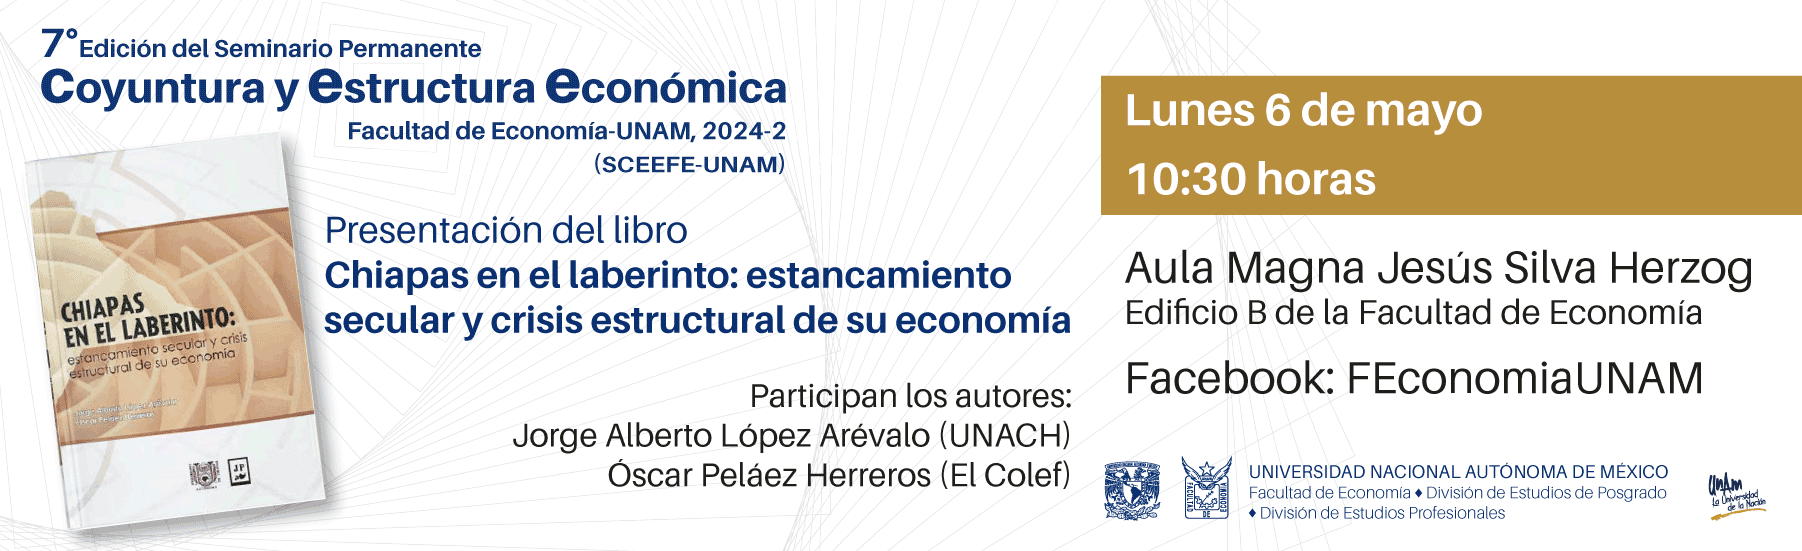 Presentación del libro Chiapas en el laberinto: estancamiento secular y crisis estructural de su economía, lunes 6 de mayo, 10:30 h.